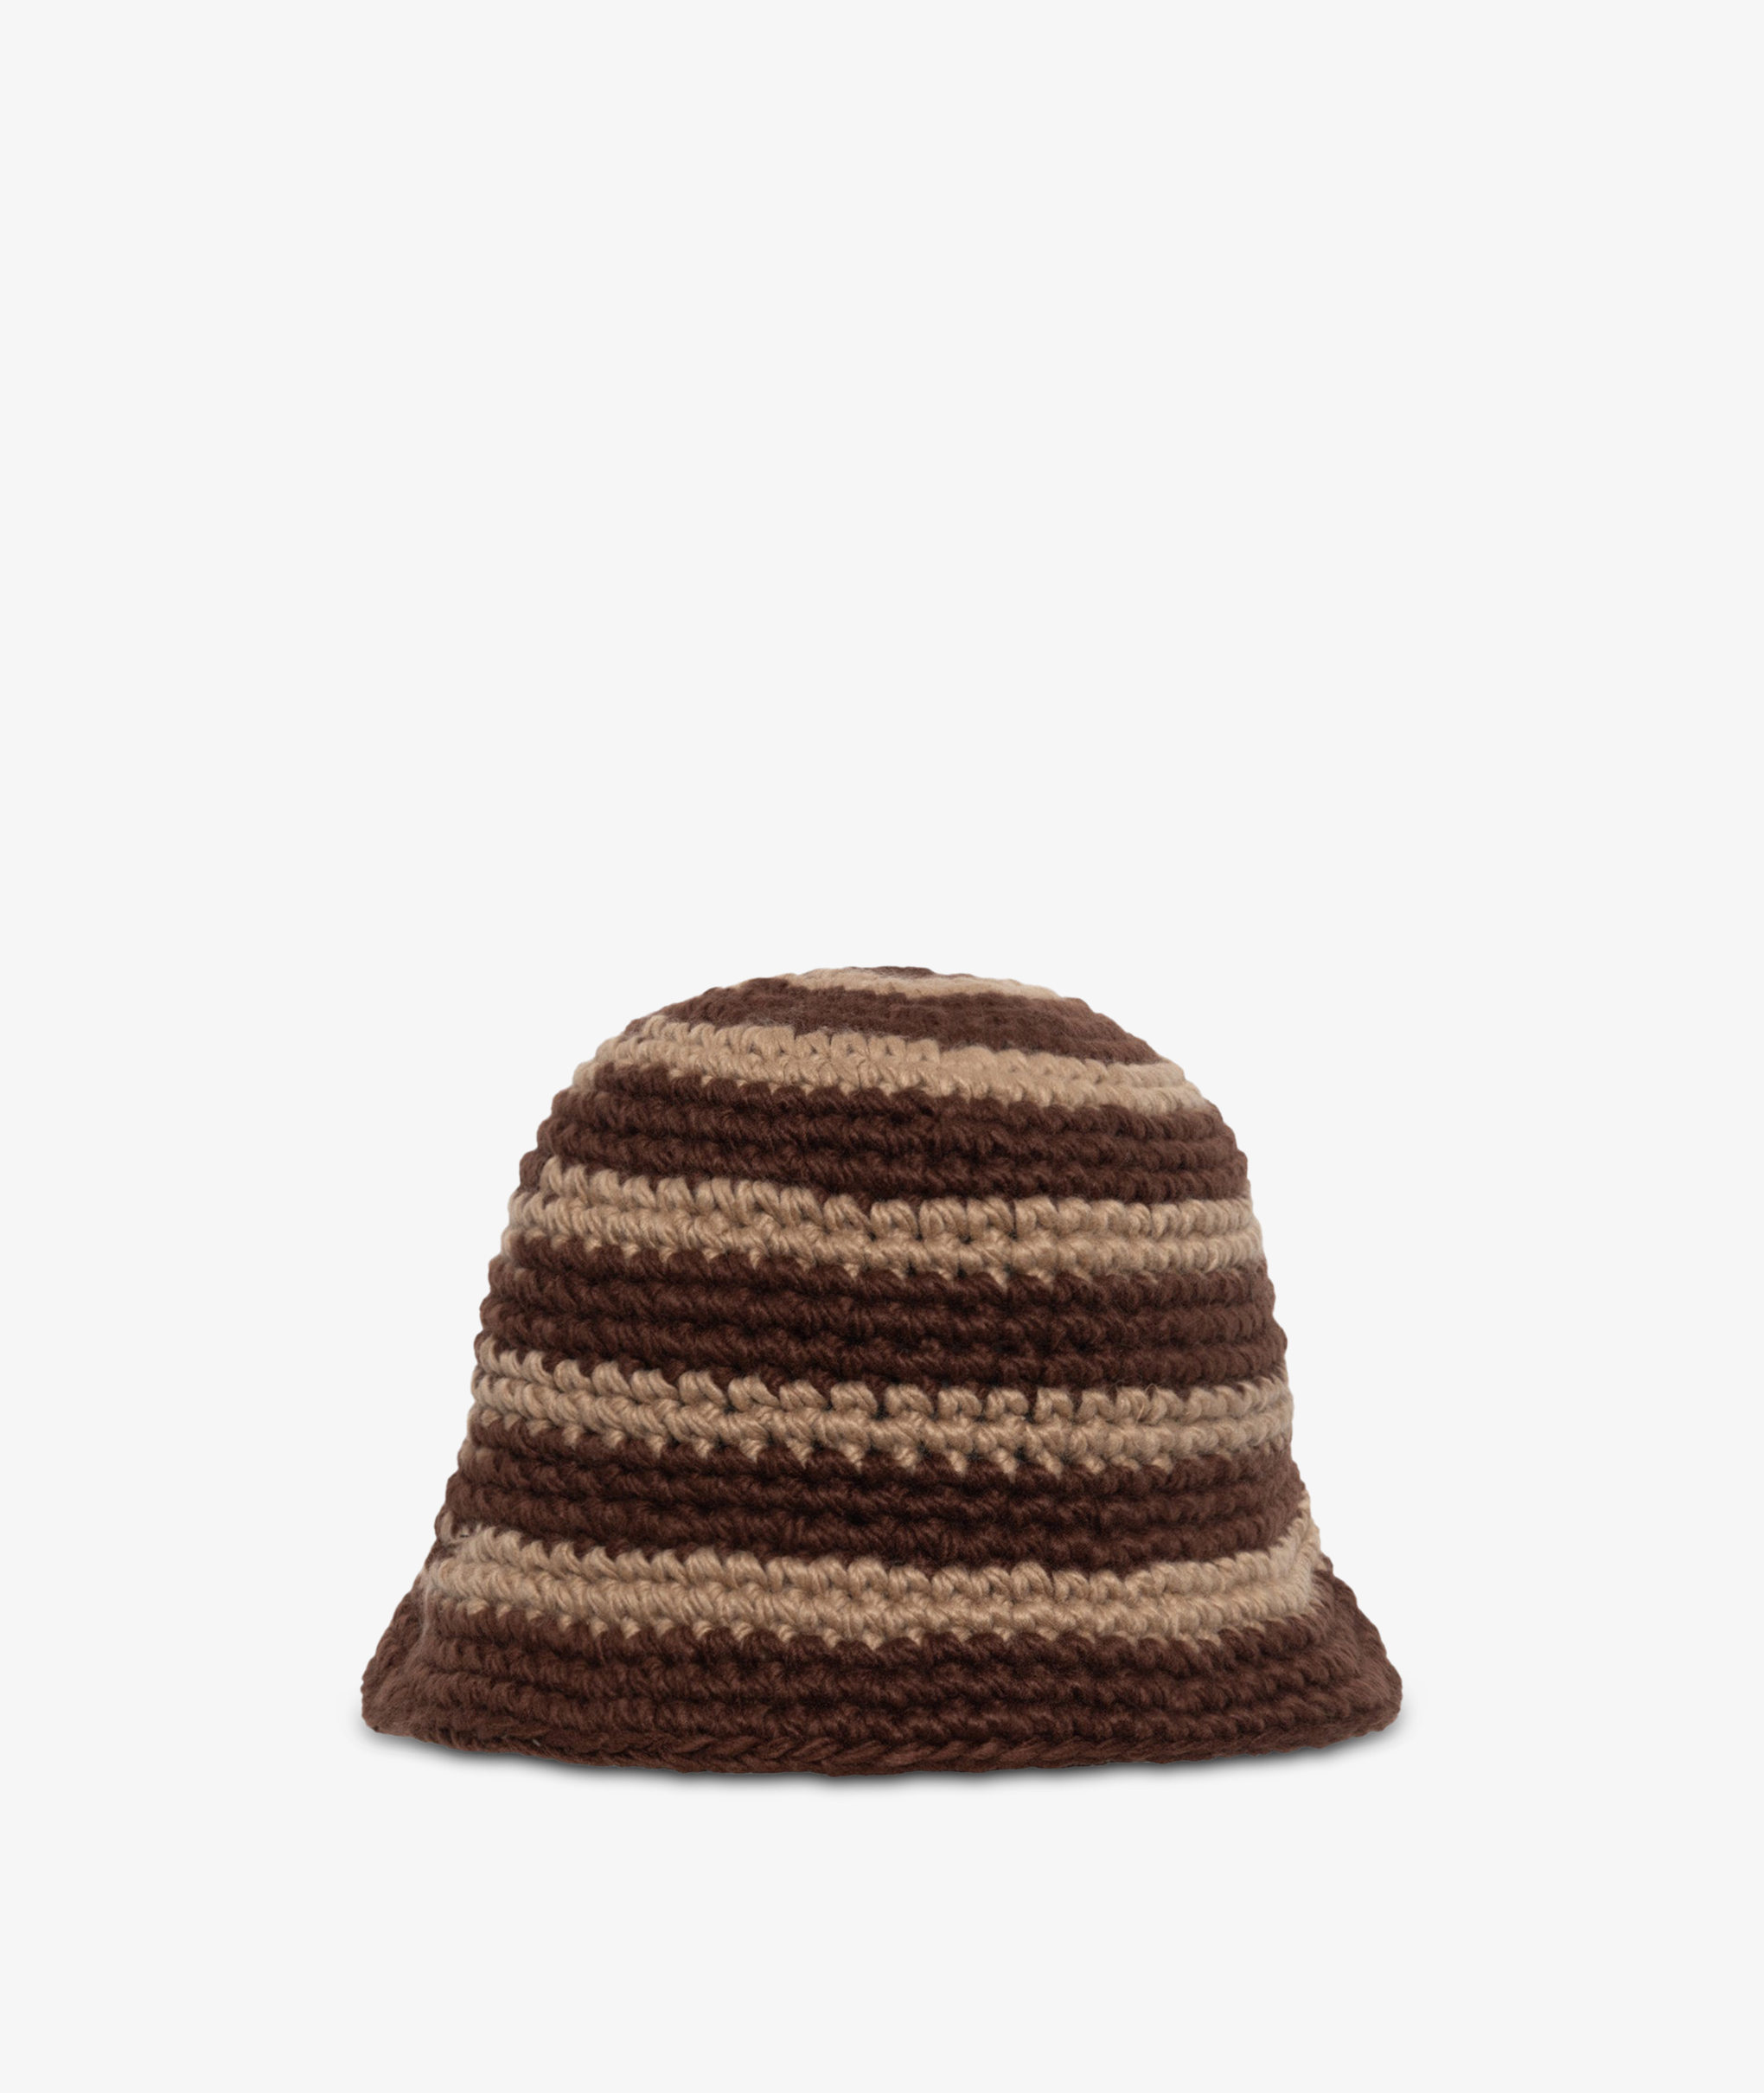 Norse Store | Shipping Worldwide - Stüssy Swirl Knit Bucket Hat